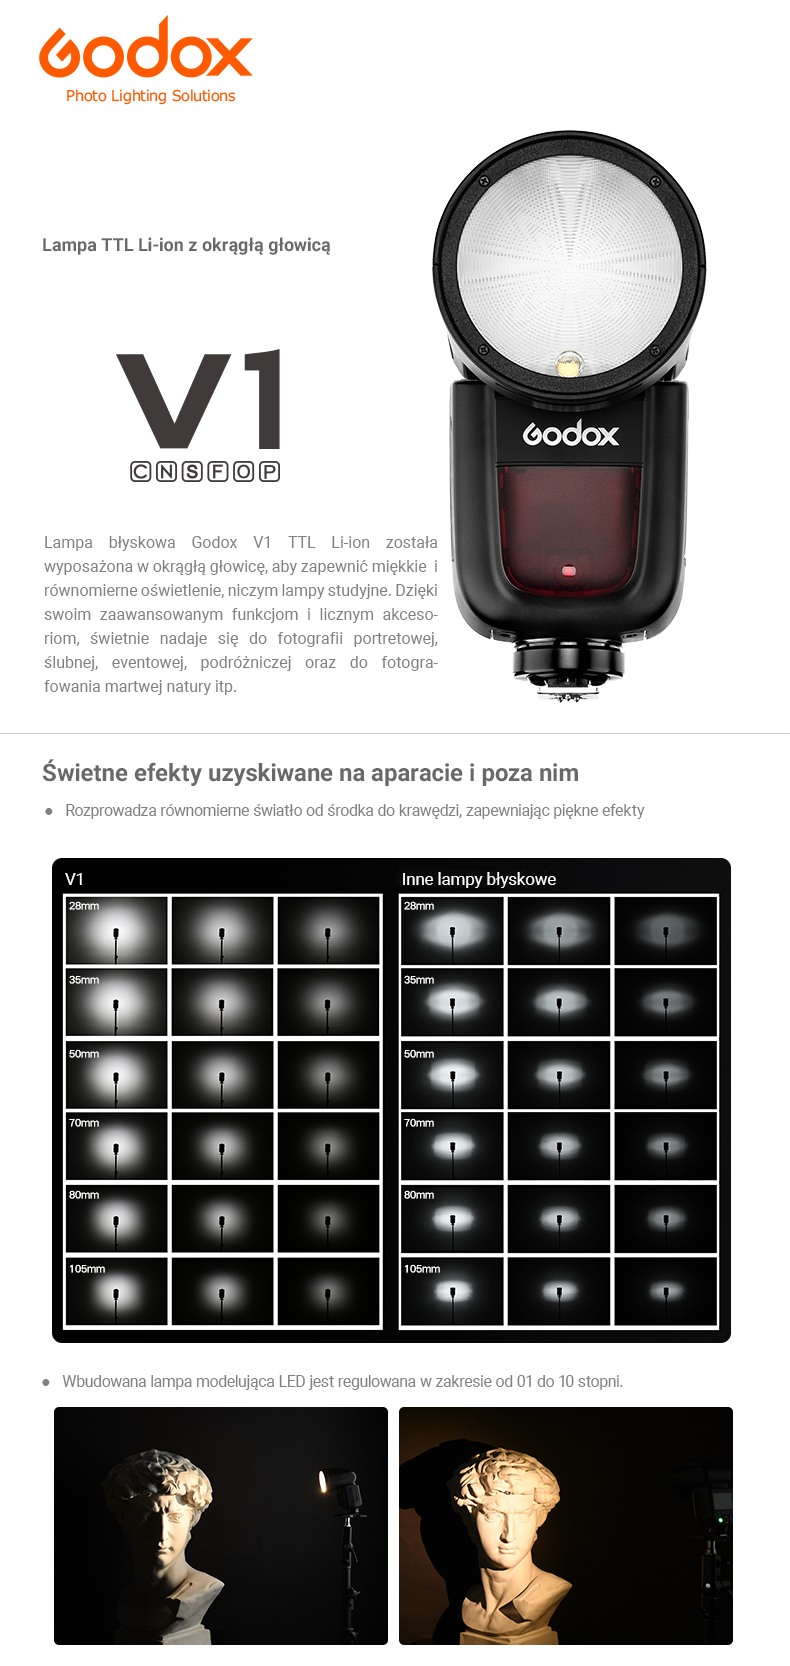 Godox V1 Lampa TTL Li-ion z okrągłą głowicą. Kompatybilna z Canon, Nikon, Sony, Fuji, Pentax, Olympus.